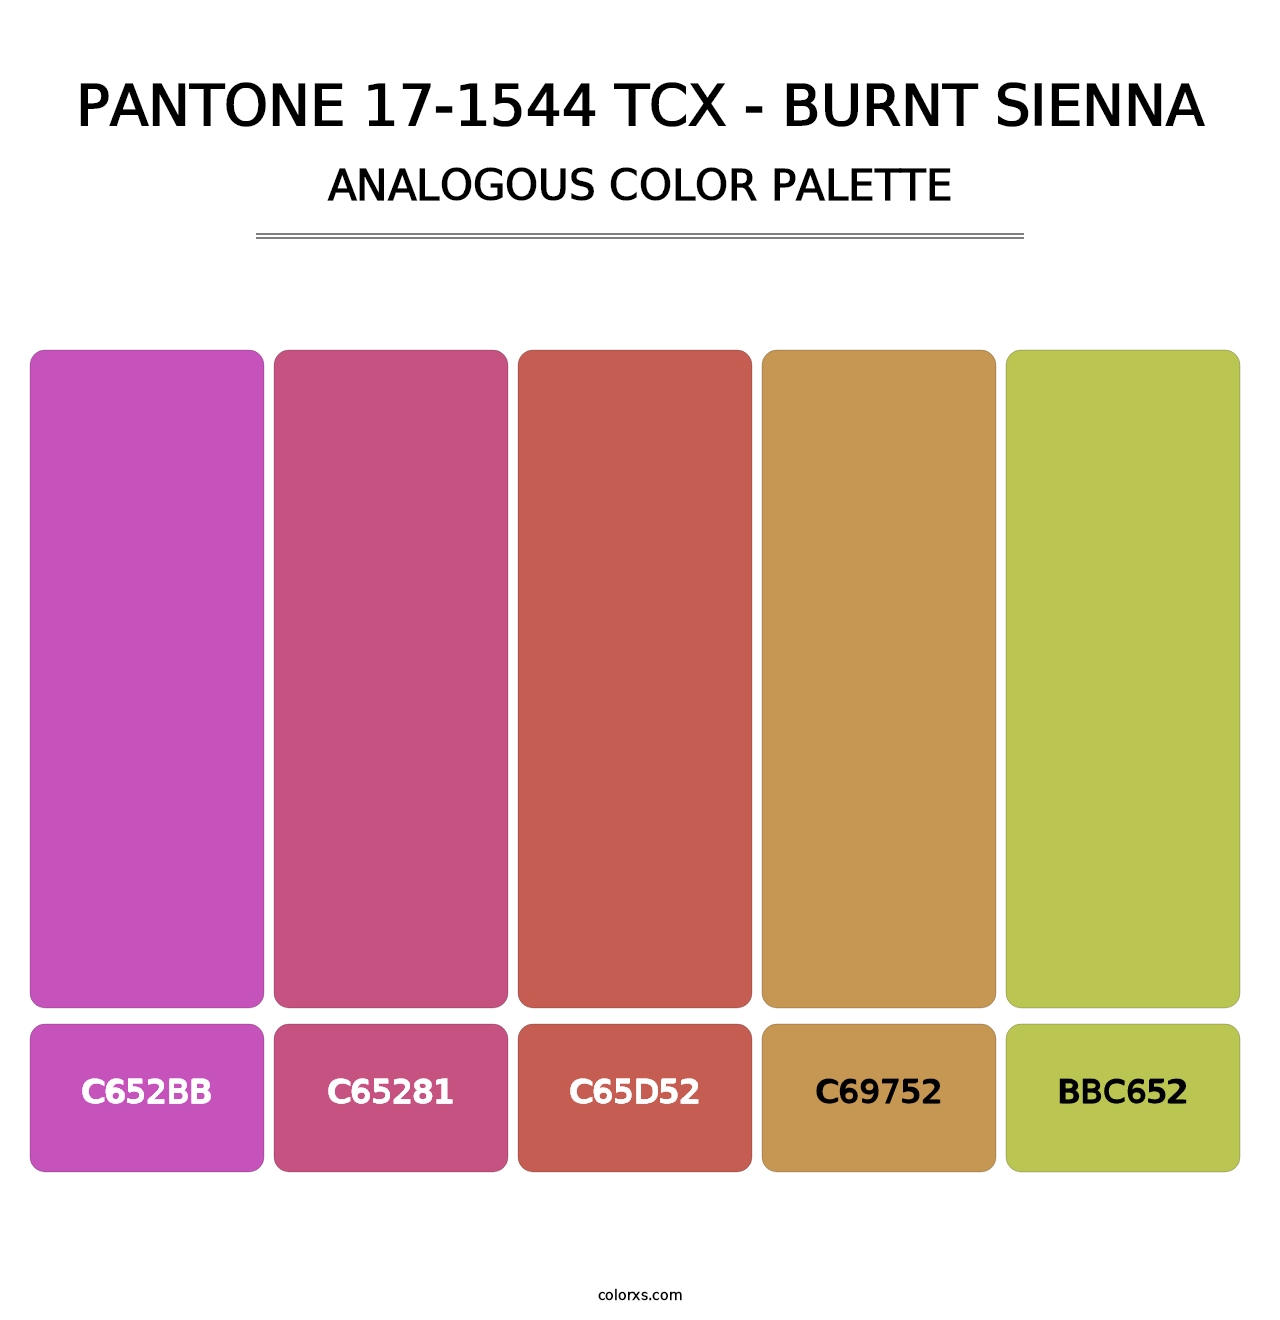 PANTONE 17-1544 TCX - Burnt Sienna - Analogous Color Palette